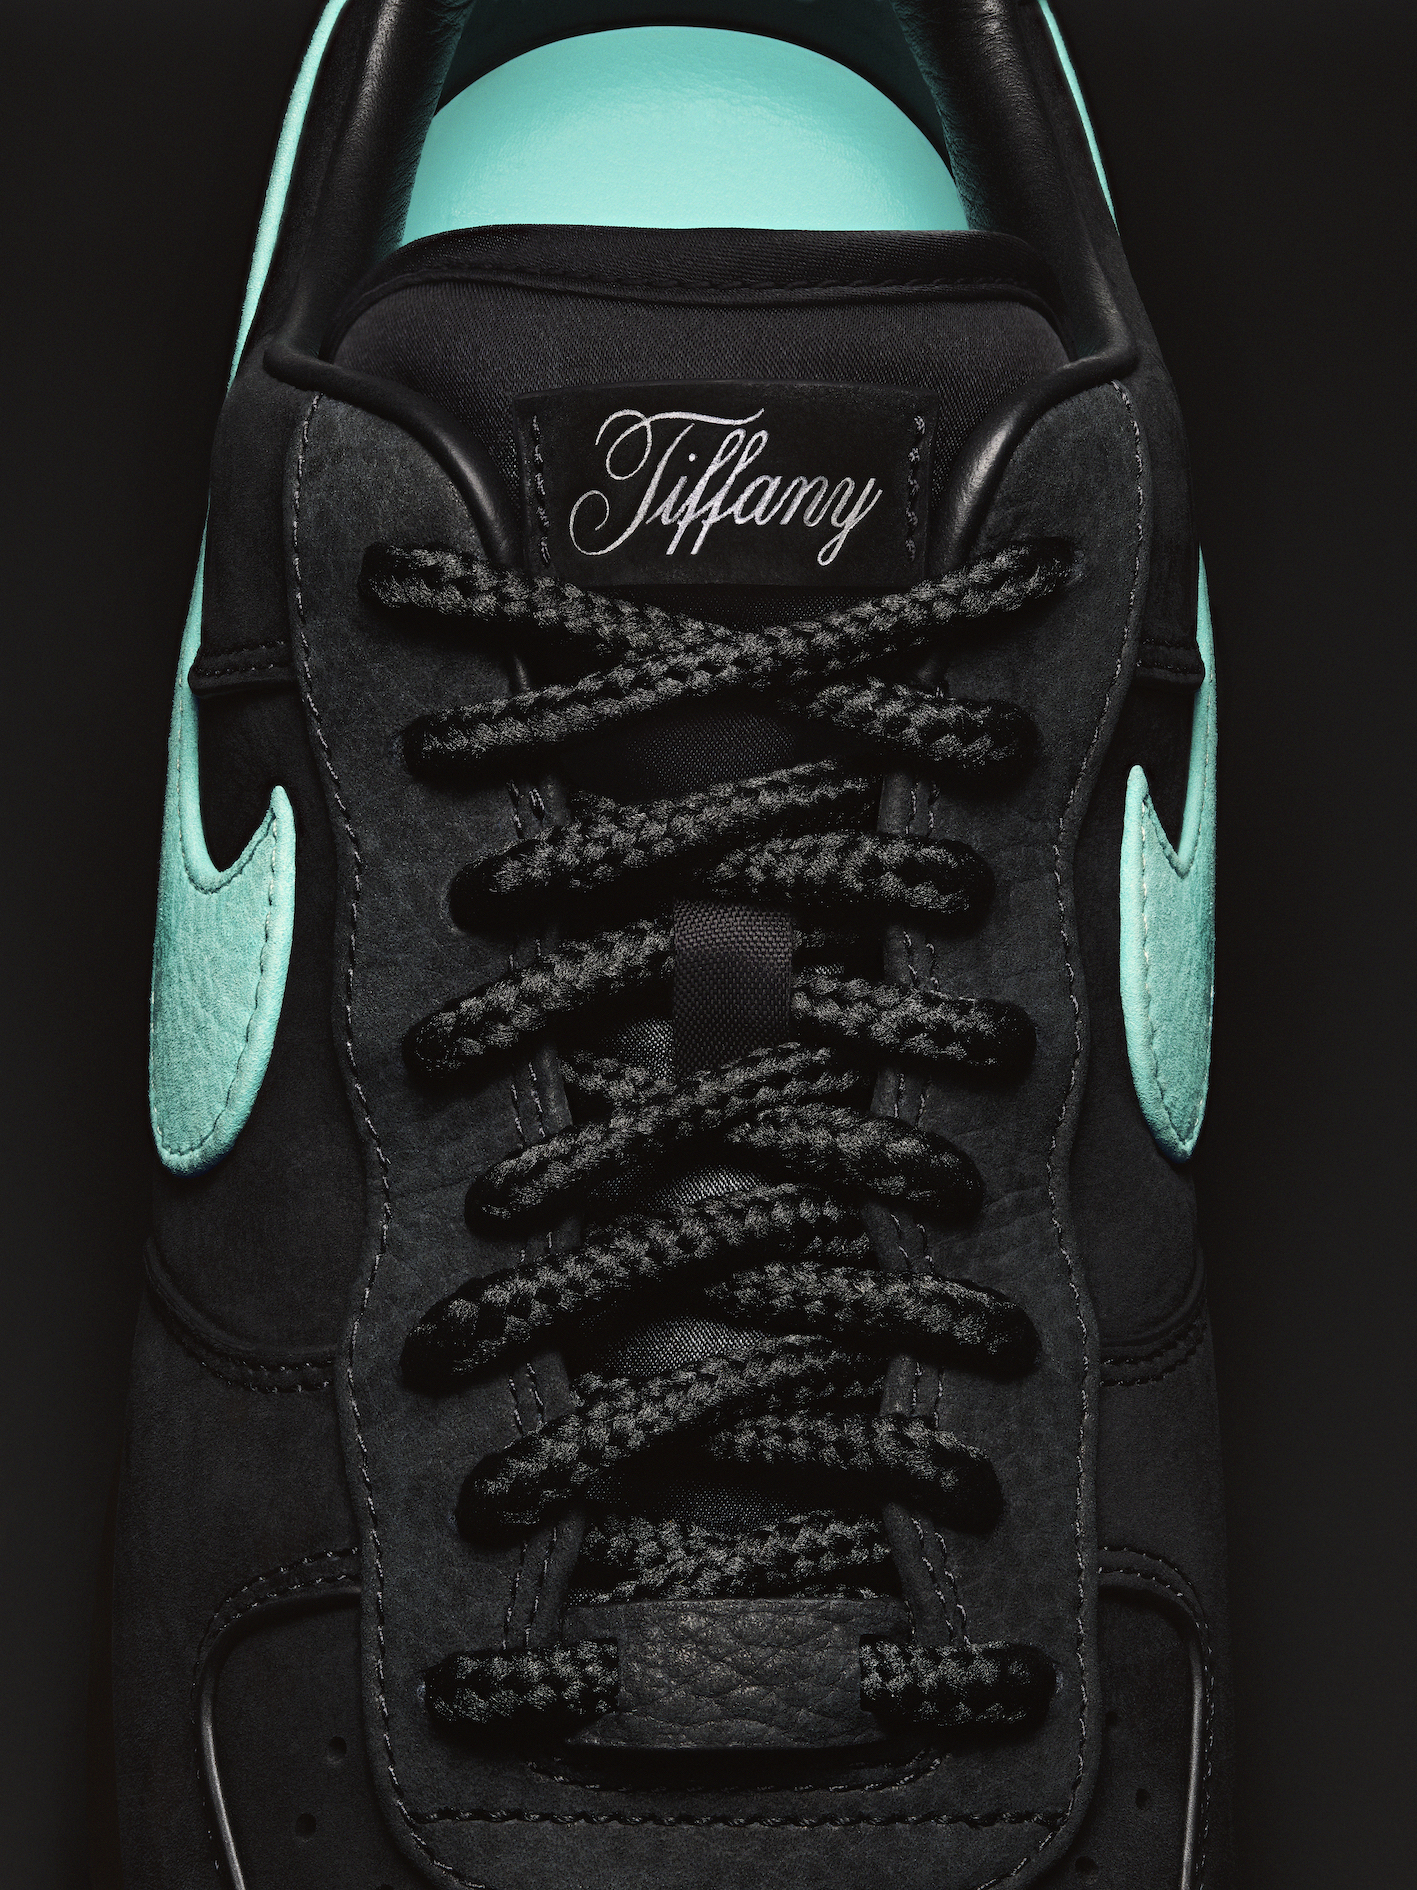 Tiffany x Nike